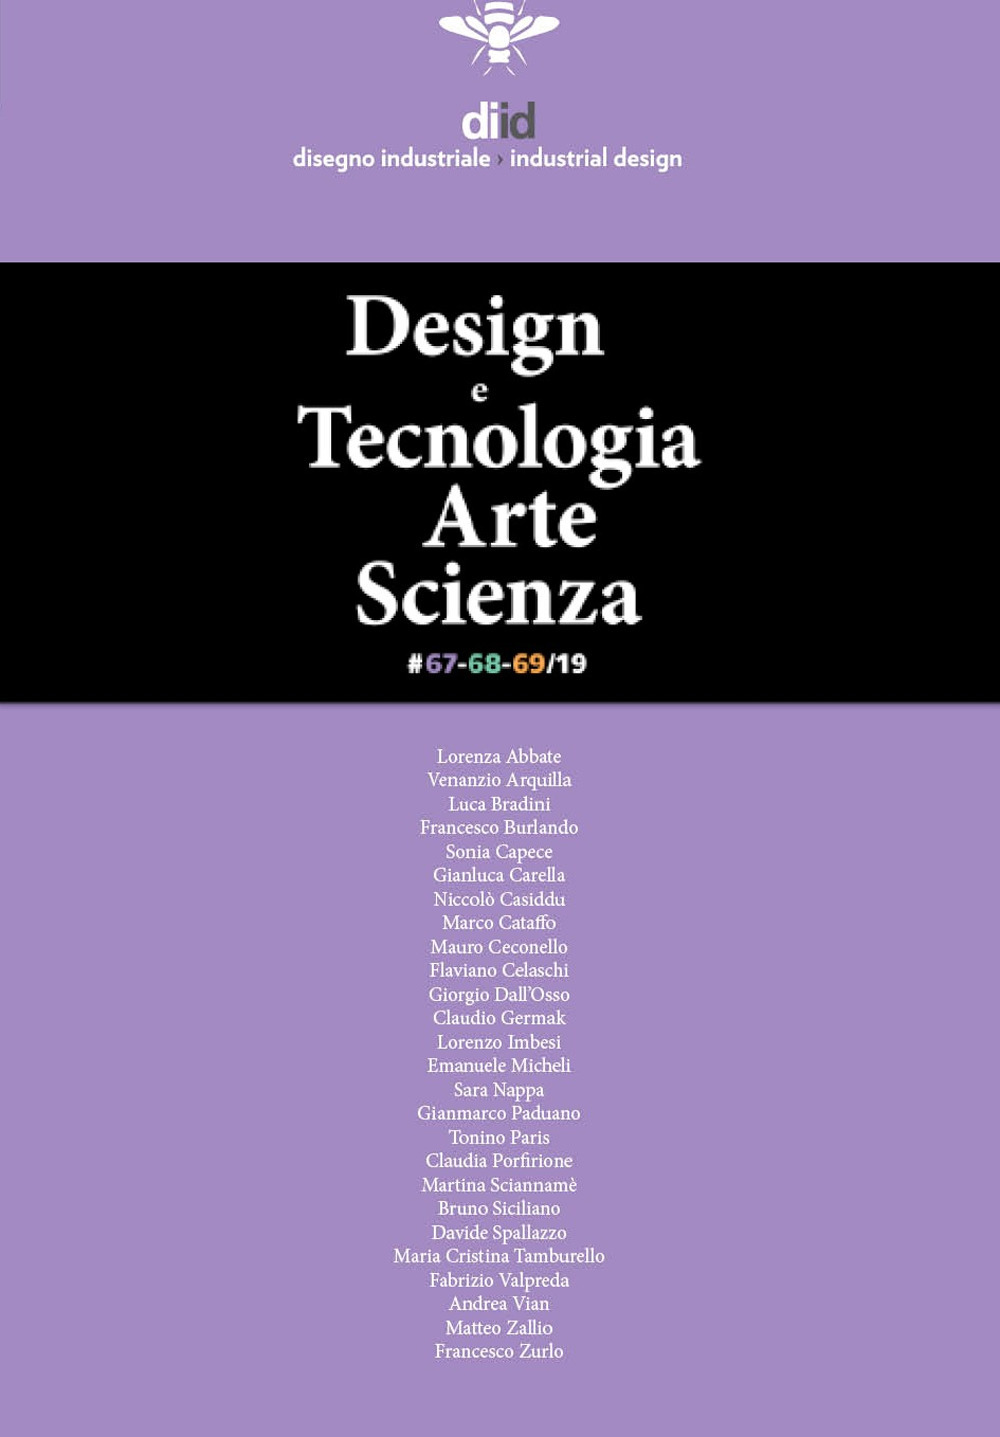 Diid disegno industriale. Vol. 67-69: Design e tecnologia, arte, scienza